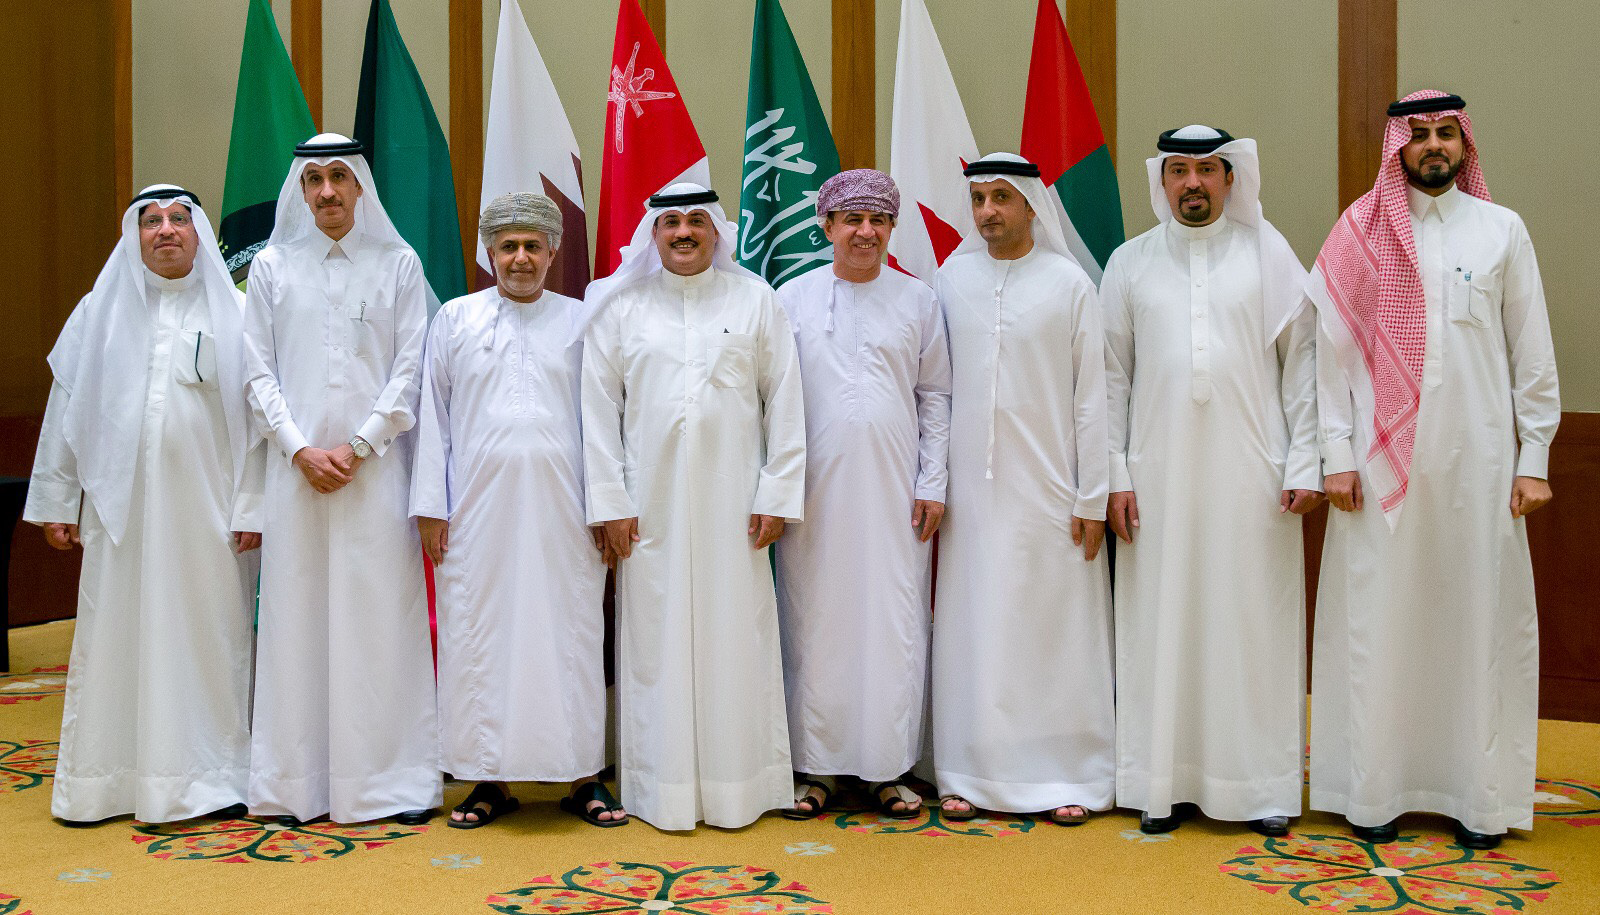 مسؤولي هيئة الاتحاد الجمركي بدول مجلس التعاون الخليجي خلال اختتام اعمال الاجتماع